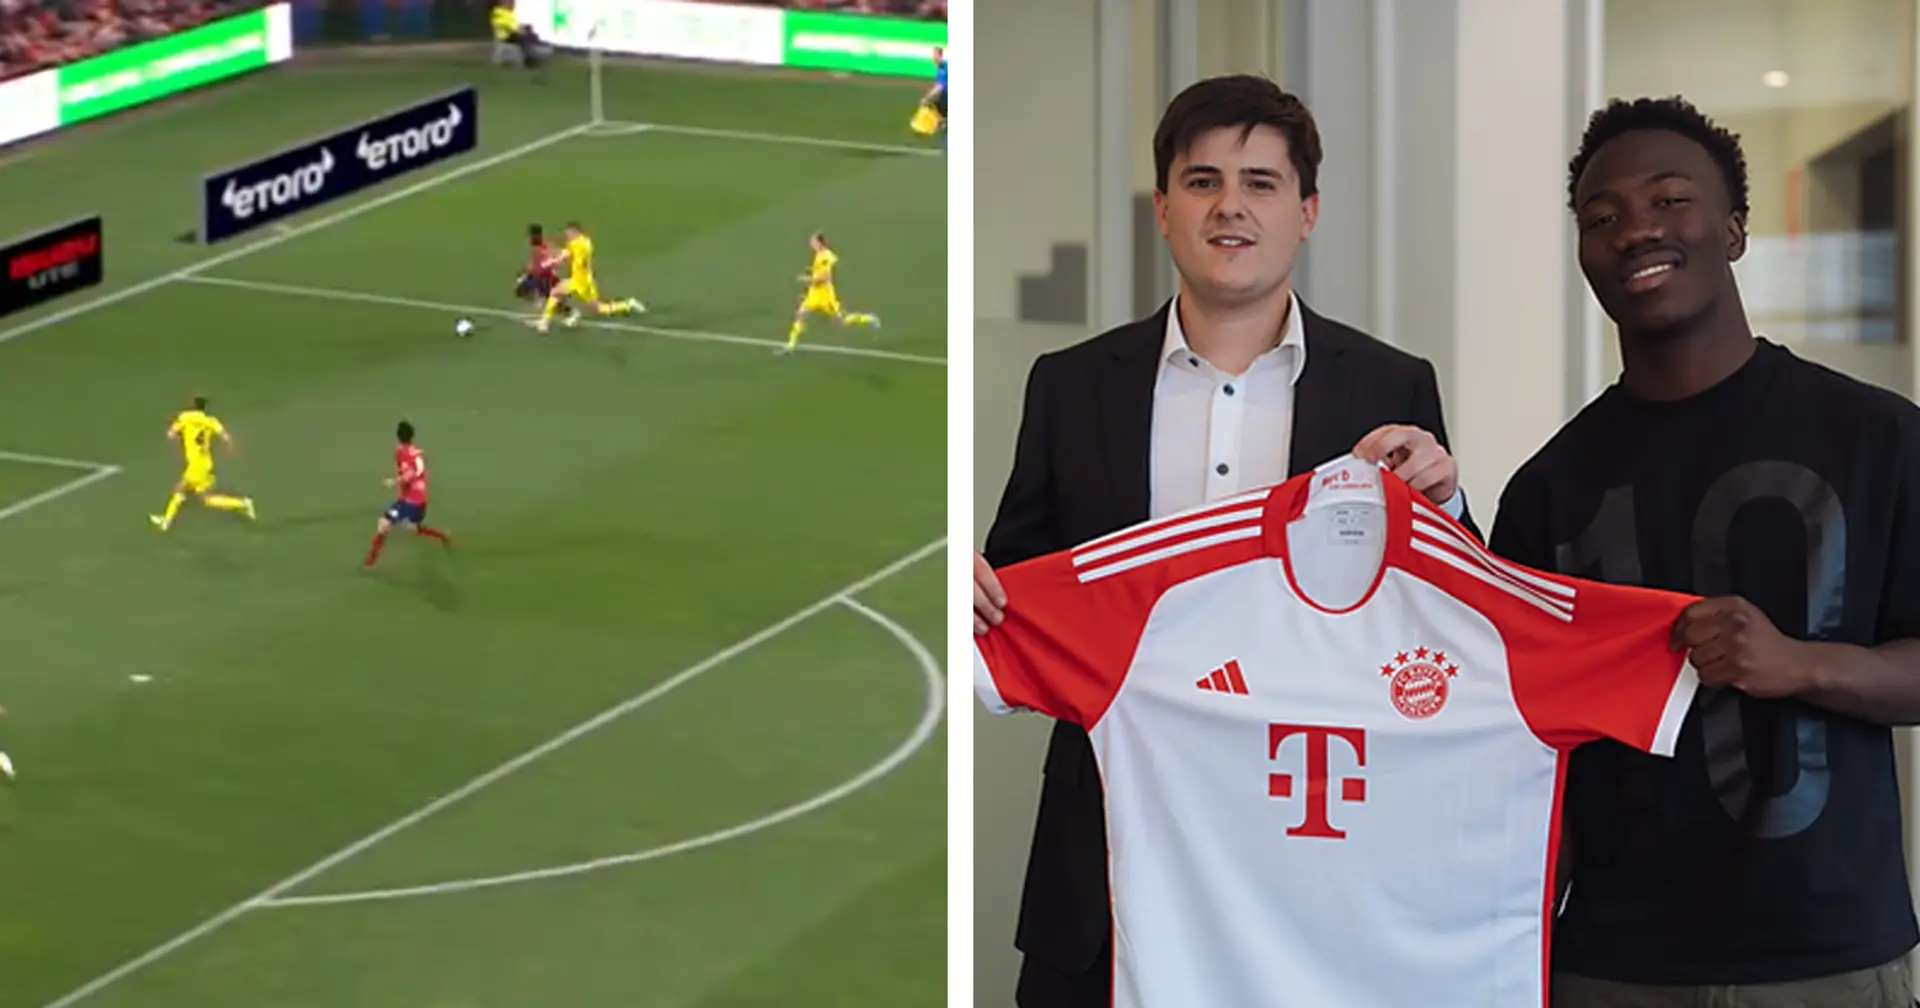 Nestory Irankunda mit Top-Leistung: Deswegen hat der FC Bayern ihn verpflichtet